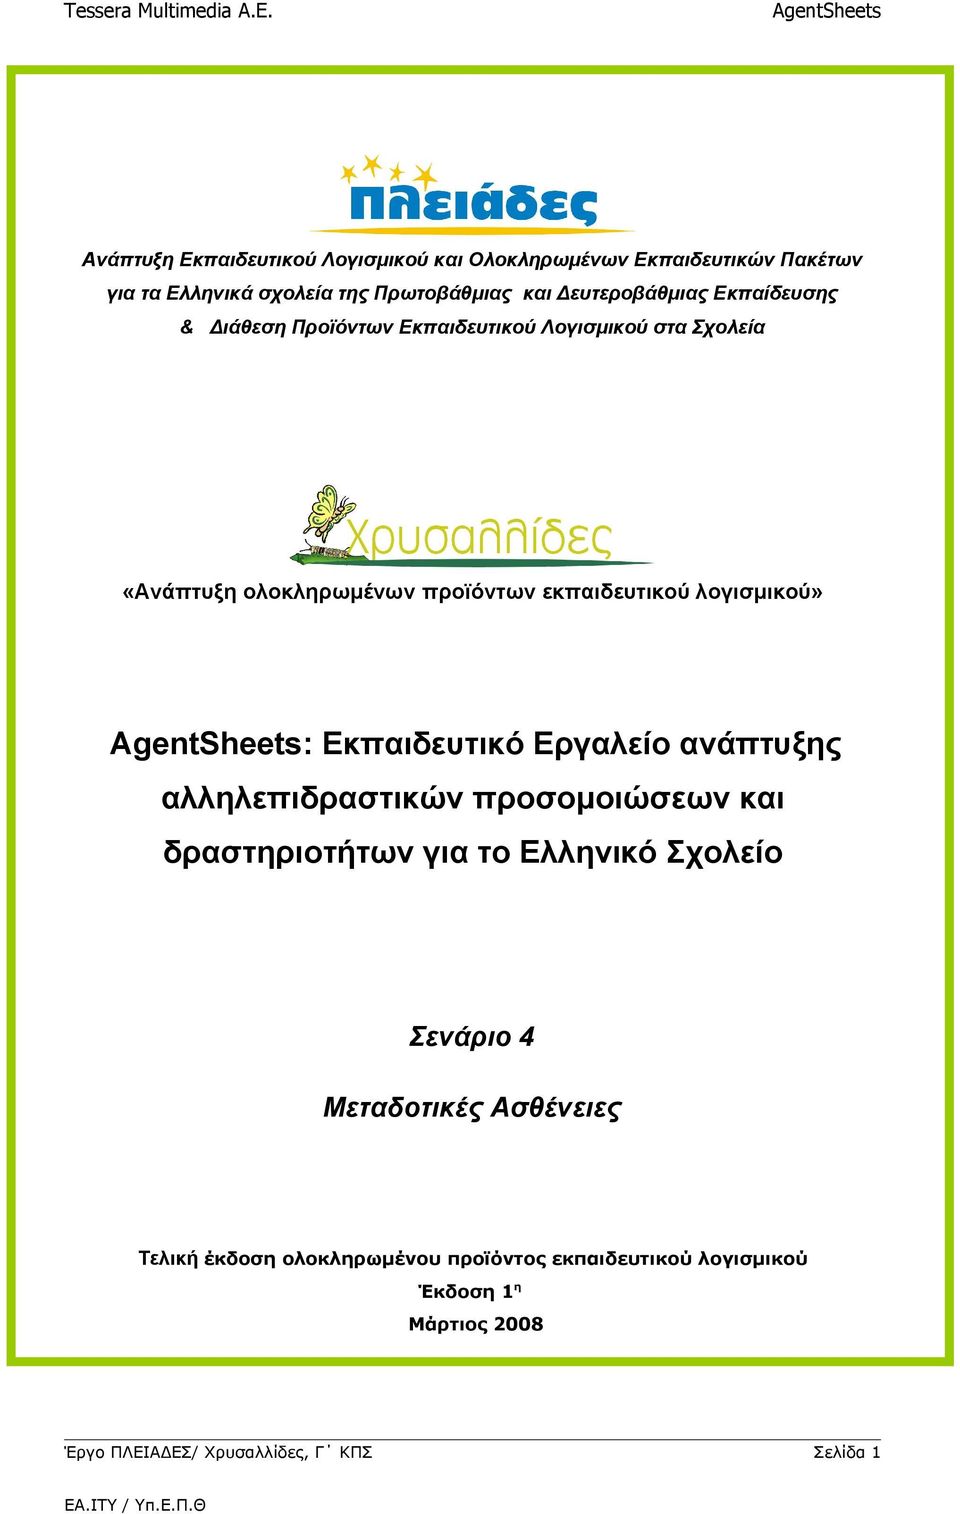 Εκπαιδευτικό Εργαλείο ανάπτυξης αλληλεπιδραστικών προσομοιώσεων και δραστηριοτήτων για το Ελληνικό Σχολείο Σενάριο 4 Μεταδοτικές